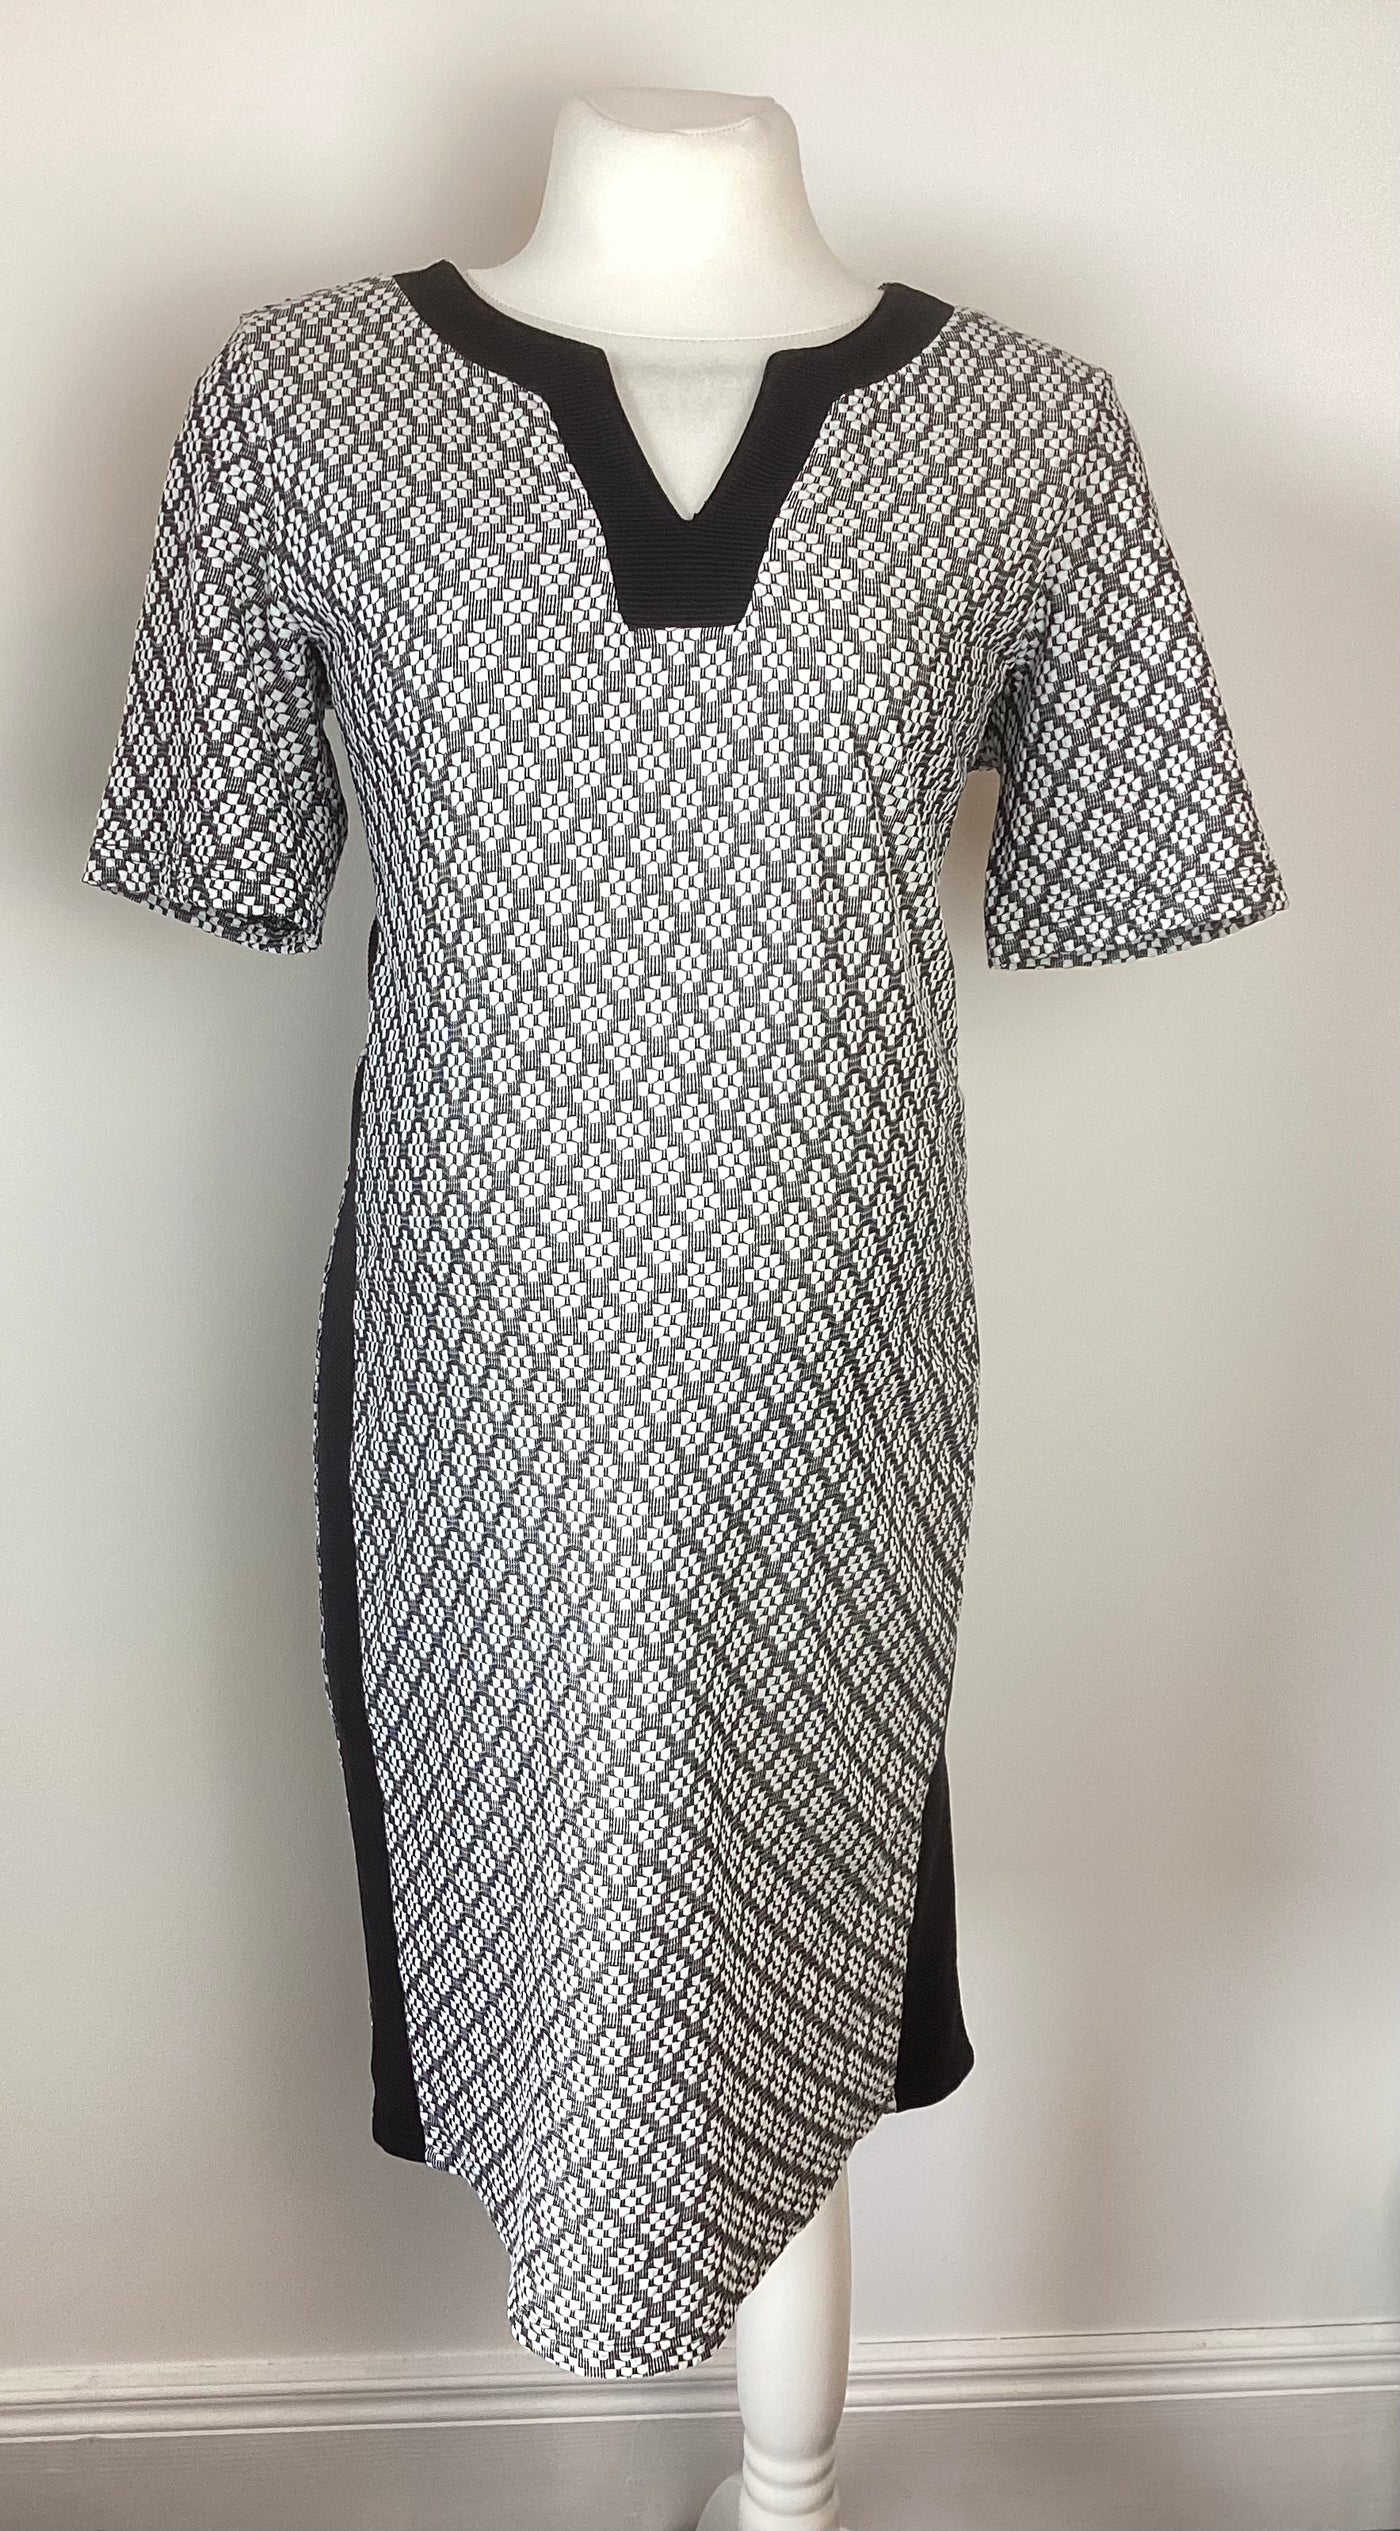 Dorothy Perkins Maternity black & white print short sleeved dress - Size 14 (more like 12/14)